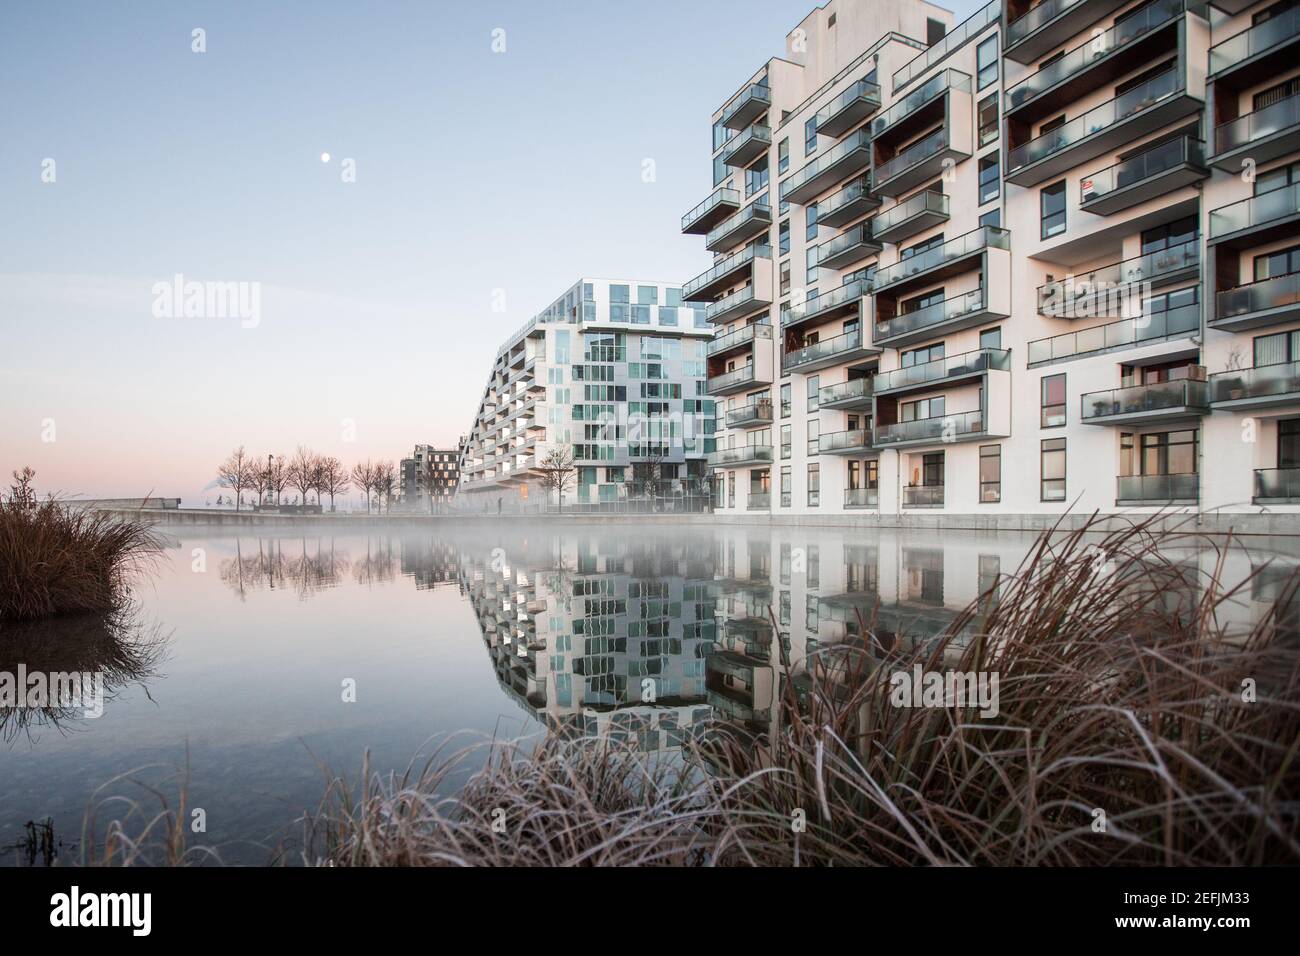 Kopenhagen, Dänemark - 07. November 2017. Moderne Architektur trifft auf Natur im Kalvebod Fælled, auch bekannt als Vestamager, einem offenen Naturschutzgebiet in Kopenhagen. Stockfoto